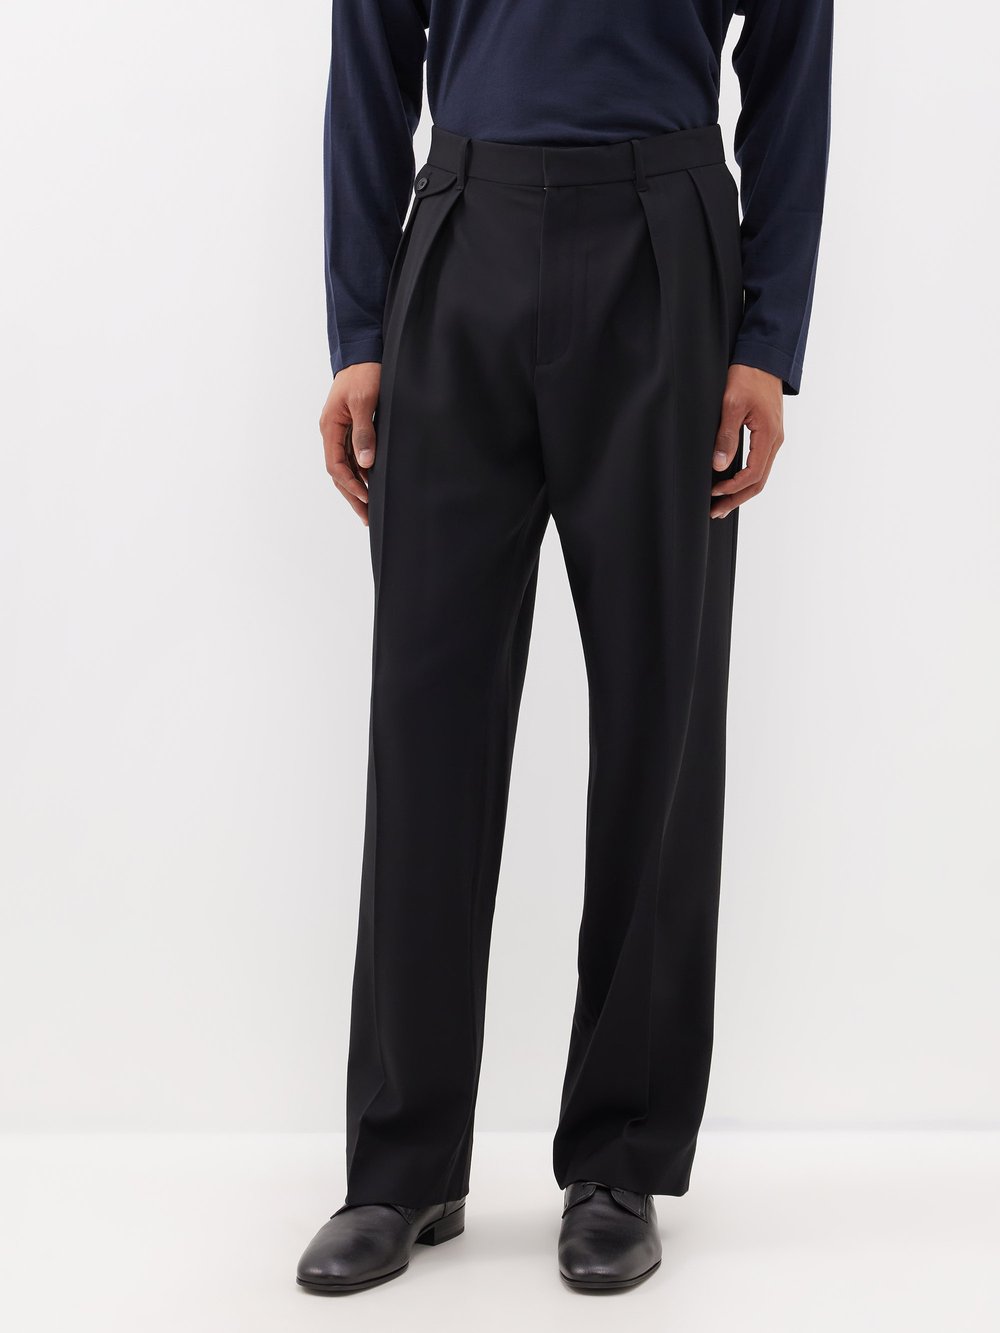 Шерстяные брюки marcello со складками The Row, черный фотографии